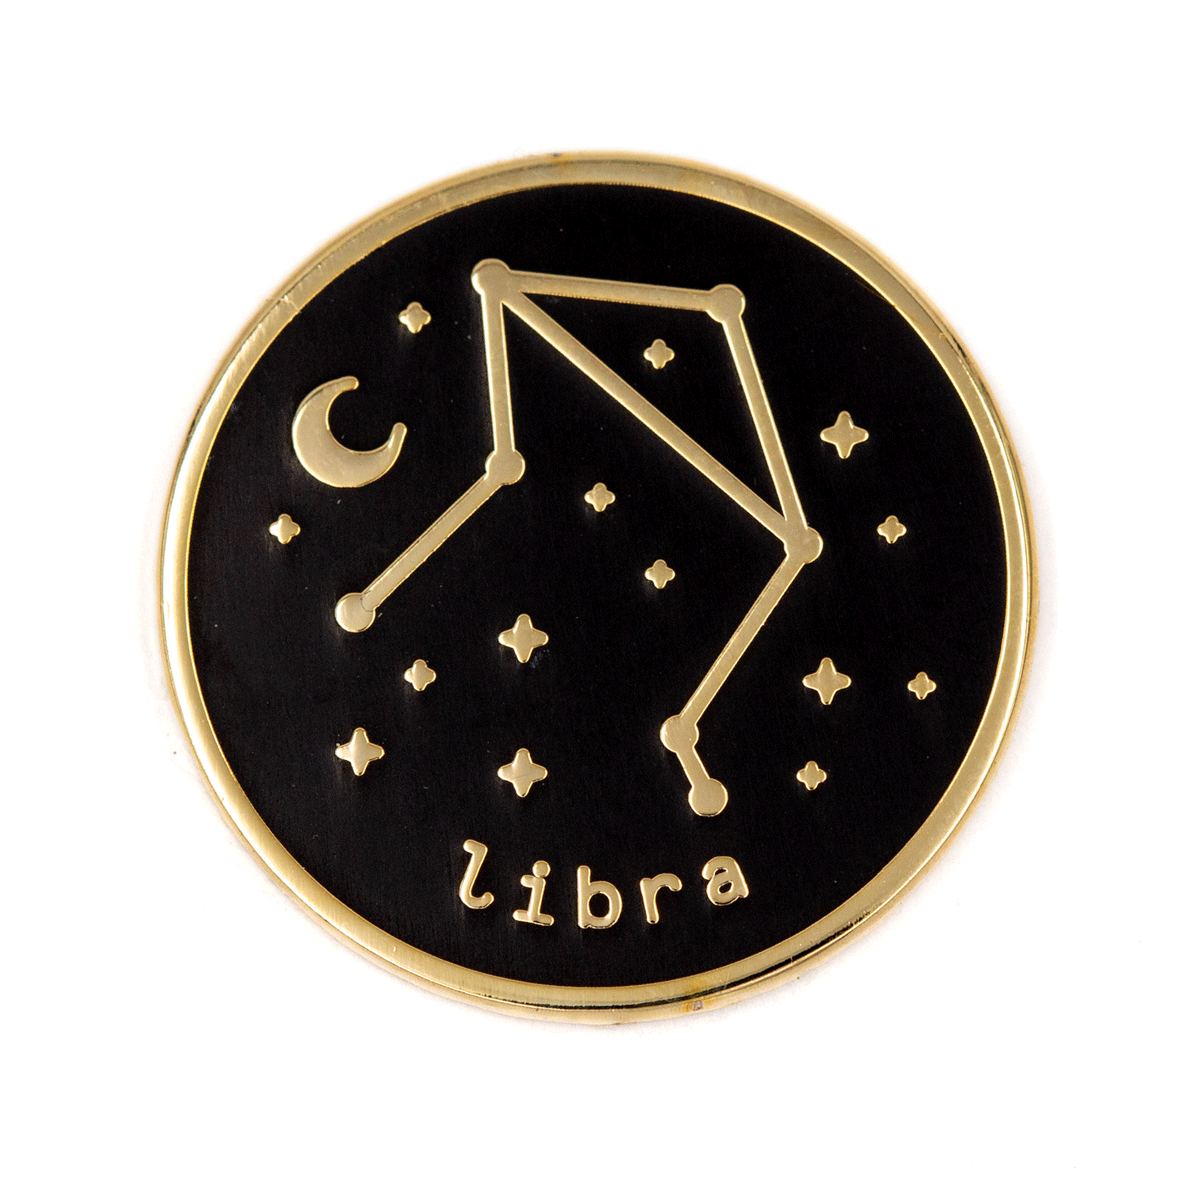 Libra Zodiac Pin